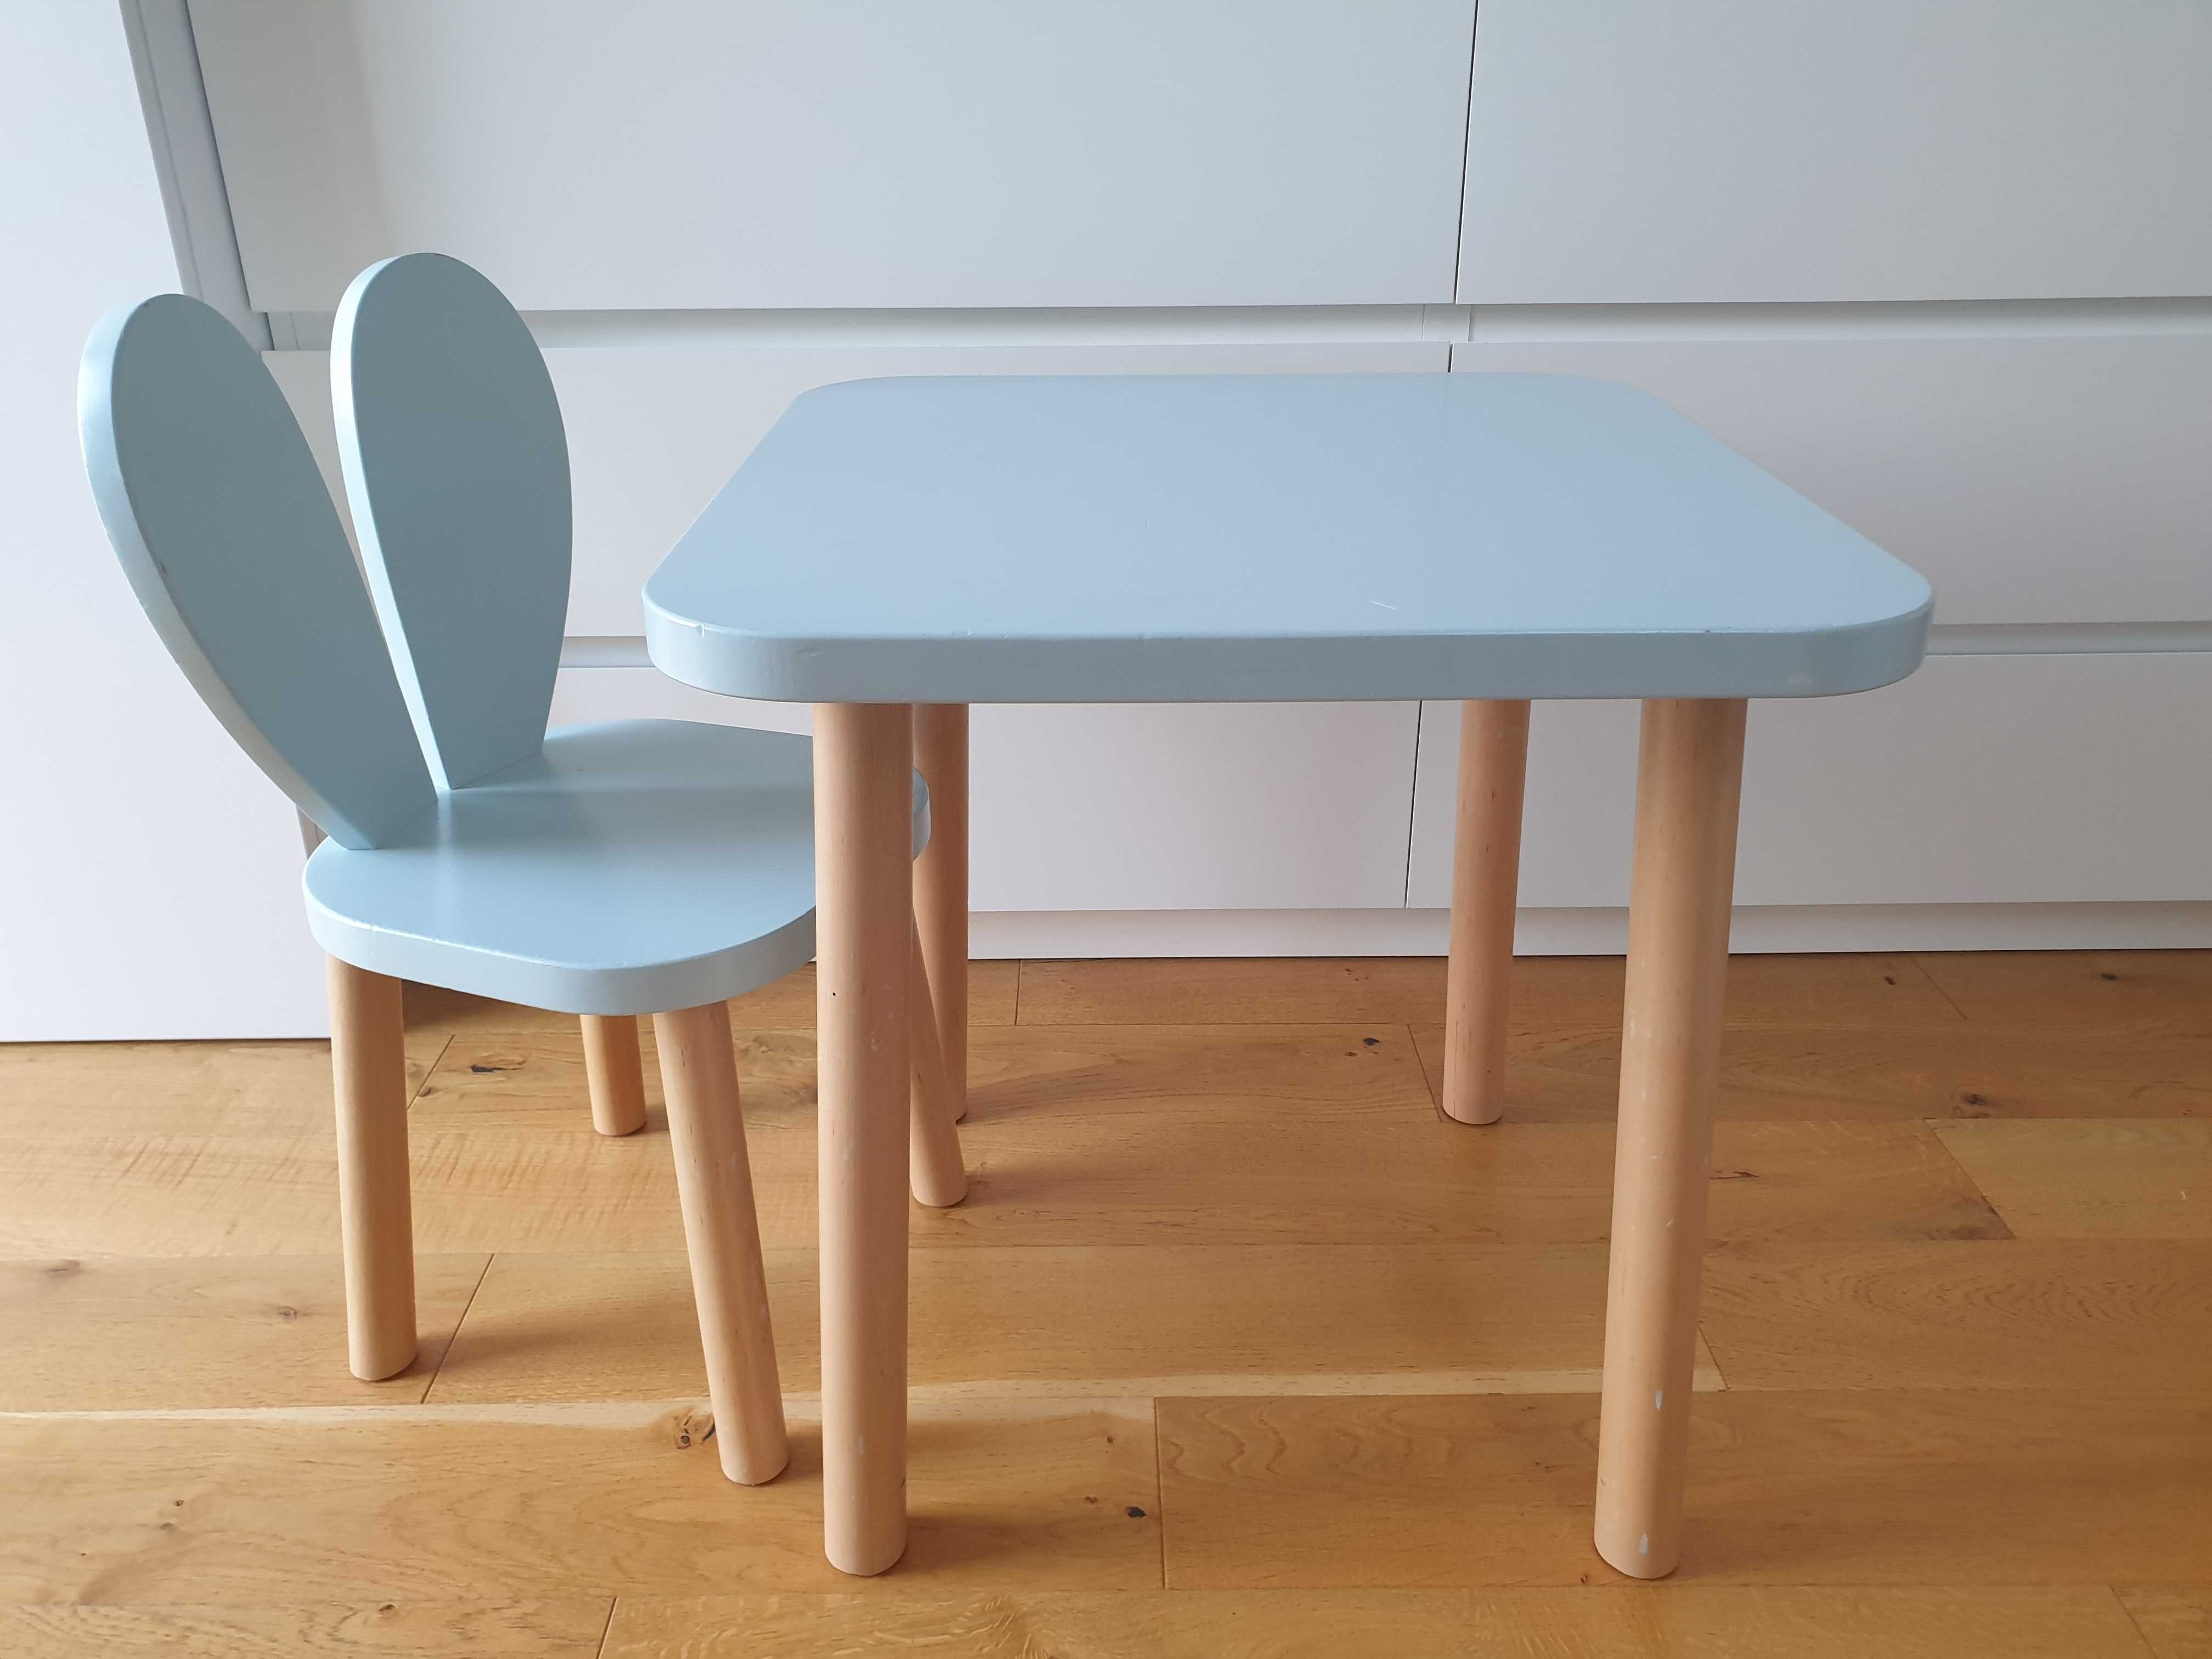 CUDANKI drewniany stolik + krzesełko KRÓLIK miętowy